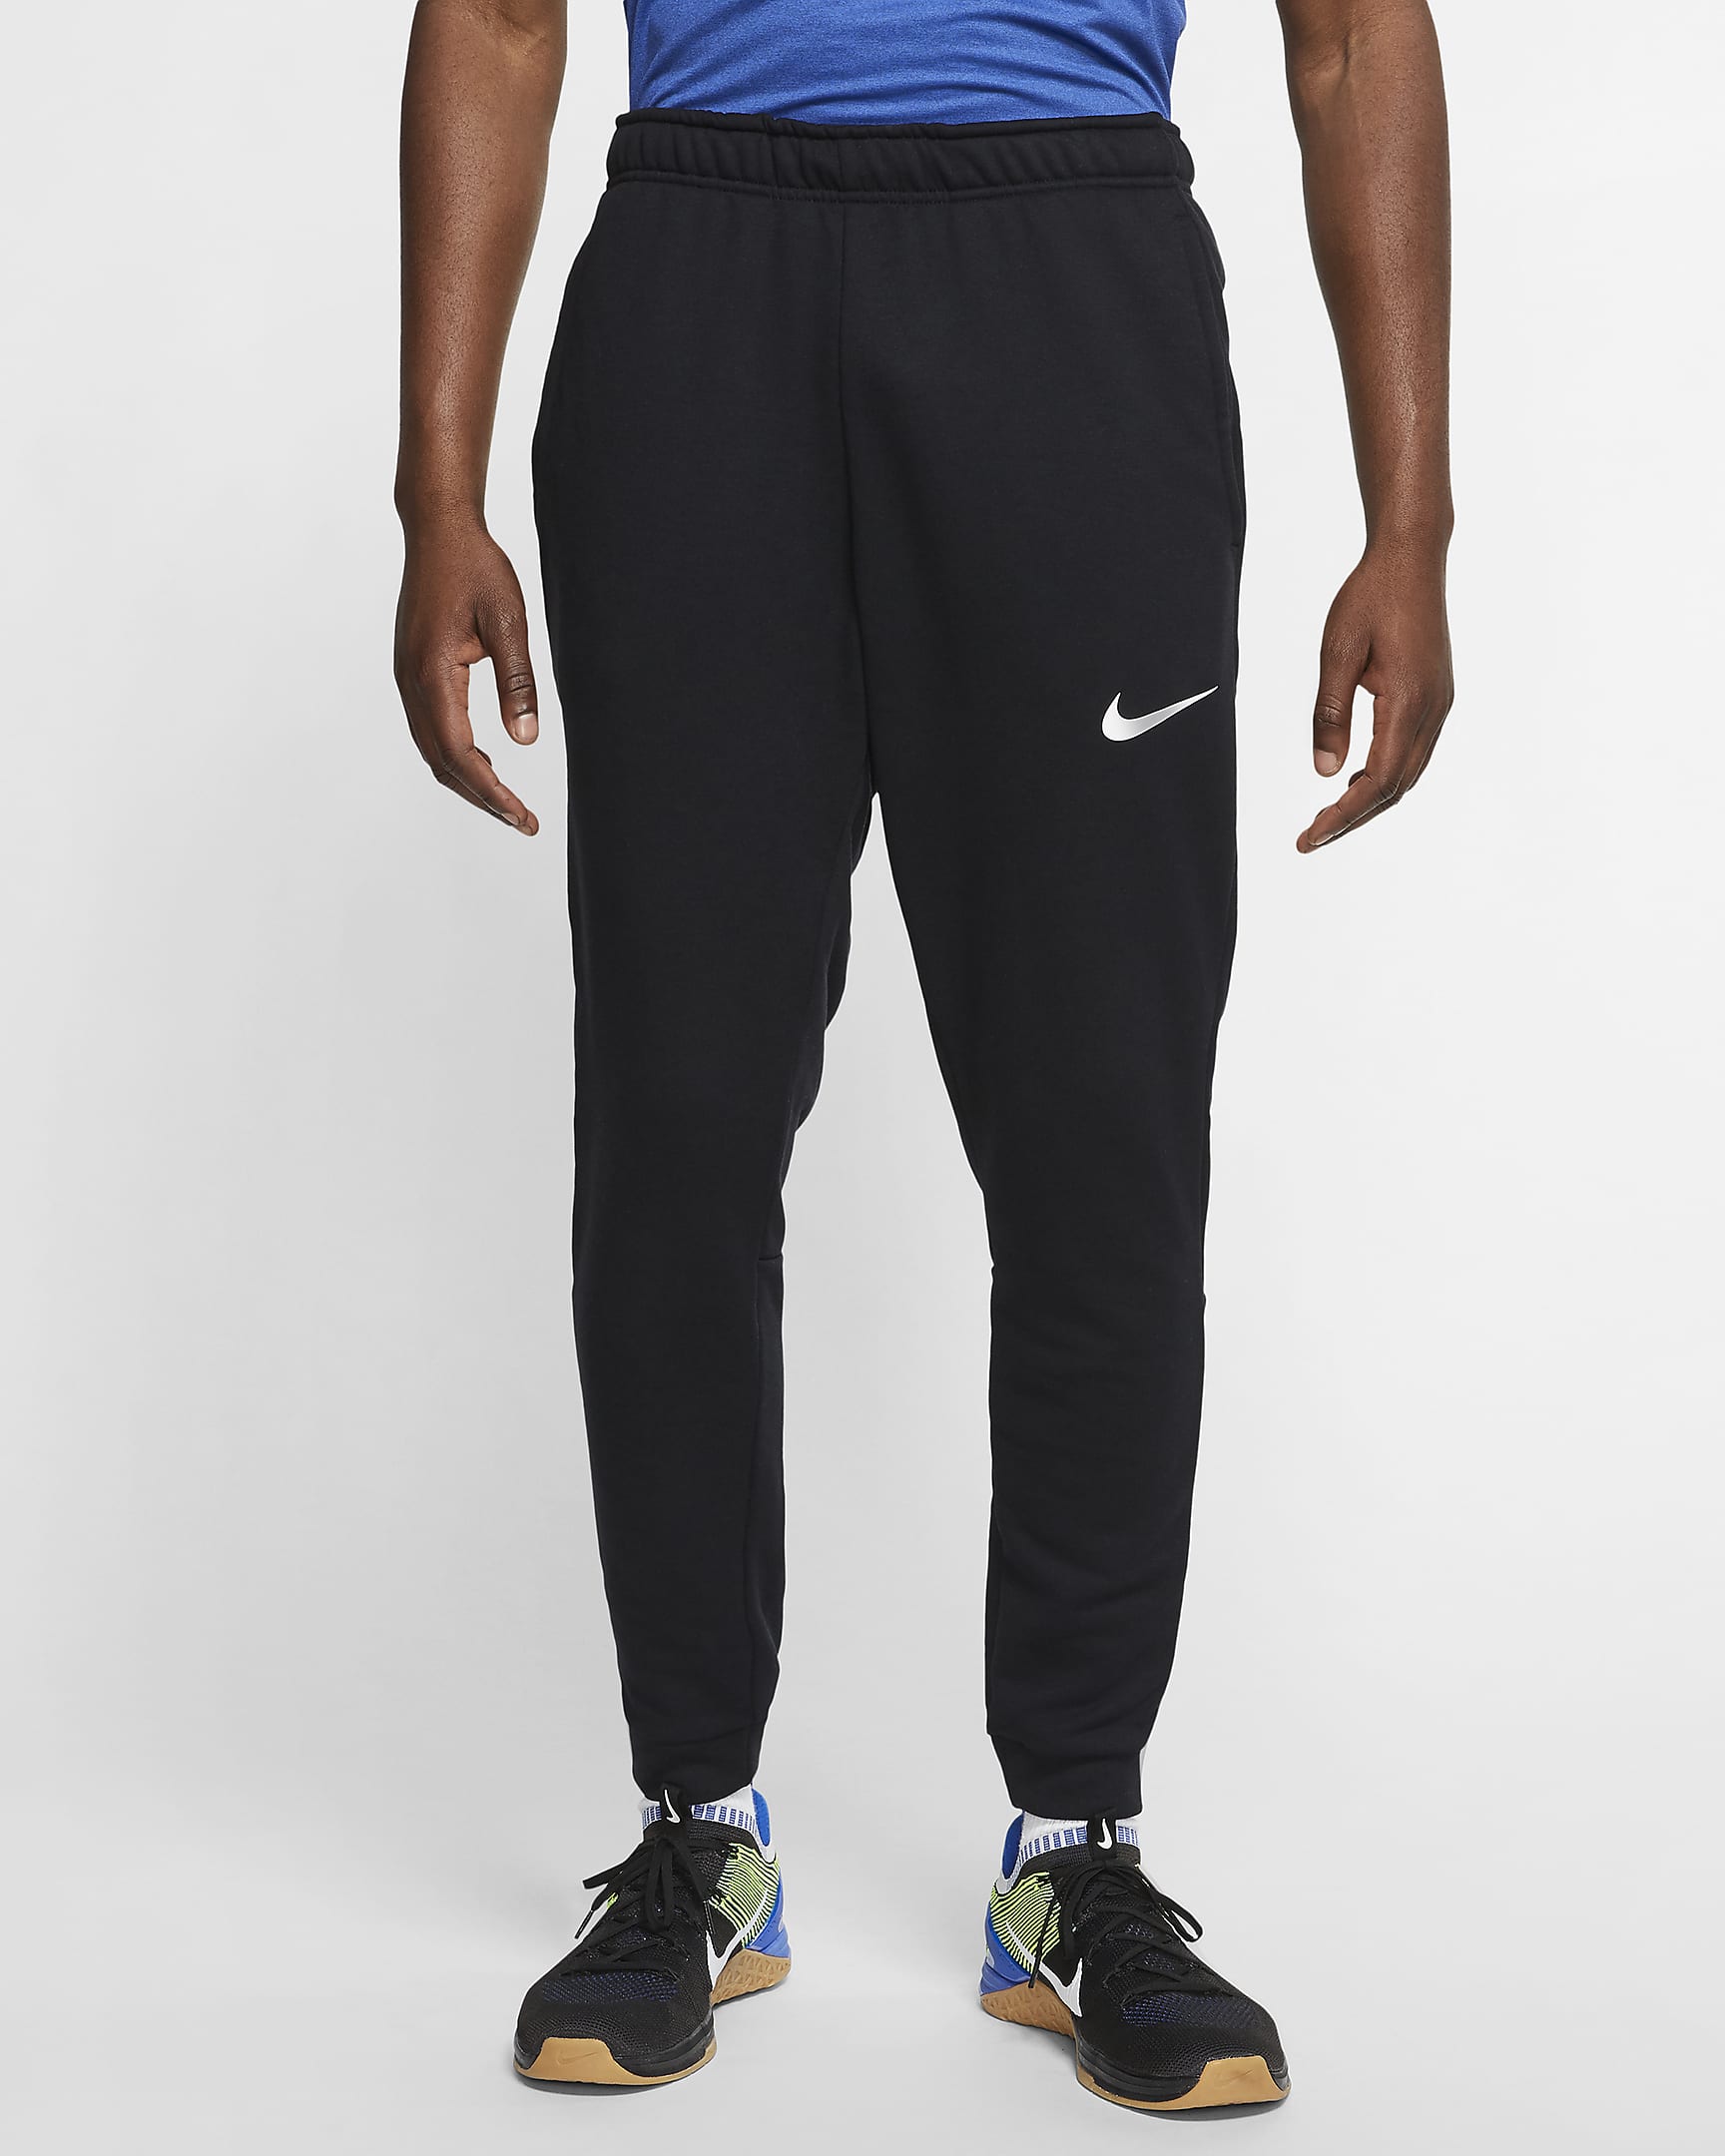 Nike Dri-FIT Men's Fleece Training Trousers. Nike VN